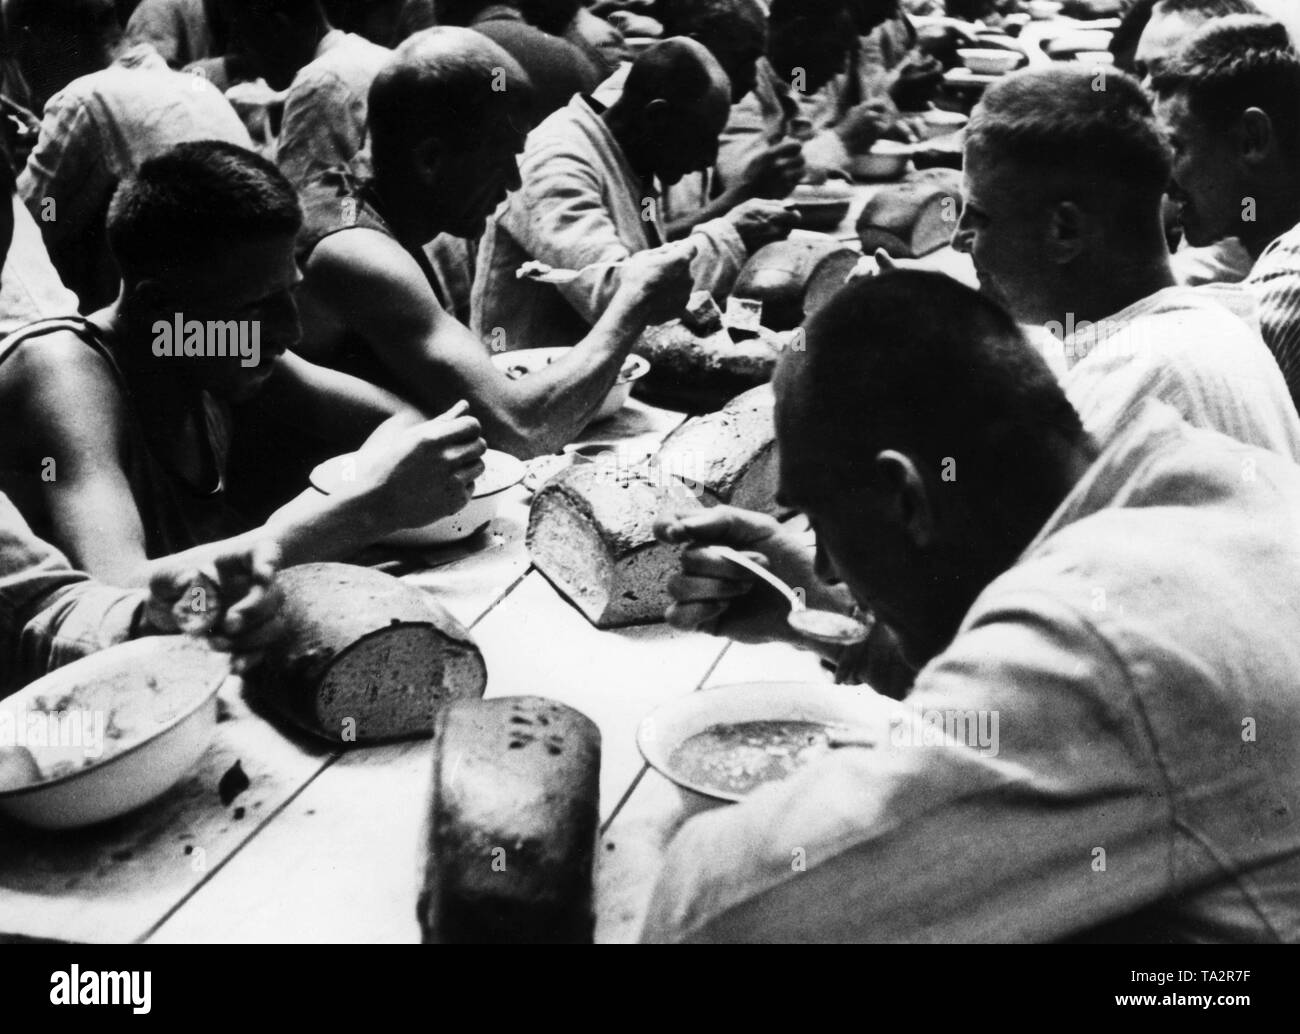 Häftlinge im KZ Dachau beim Essen. Auf der Tabelle sind mehrere Brotsorten. Dieses Foto wurde, so wie viele andere, für Propagandazwecke des NS-Regimes. Stockfoto